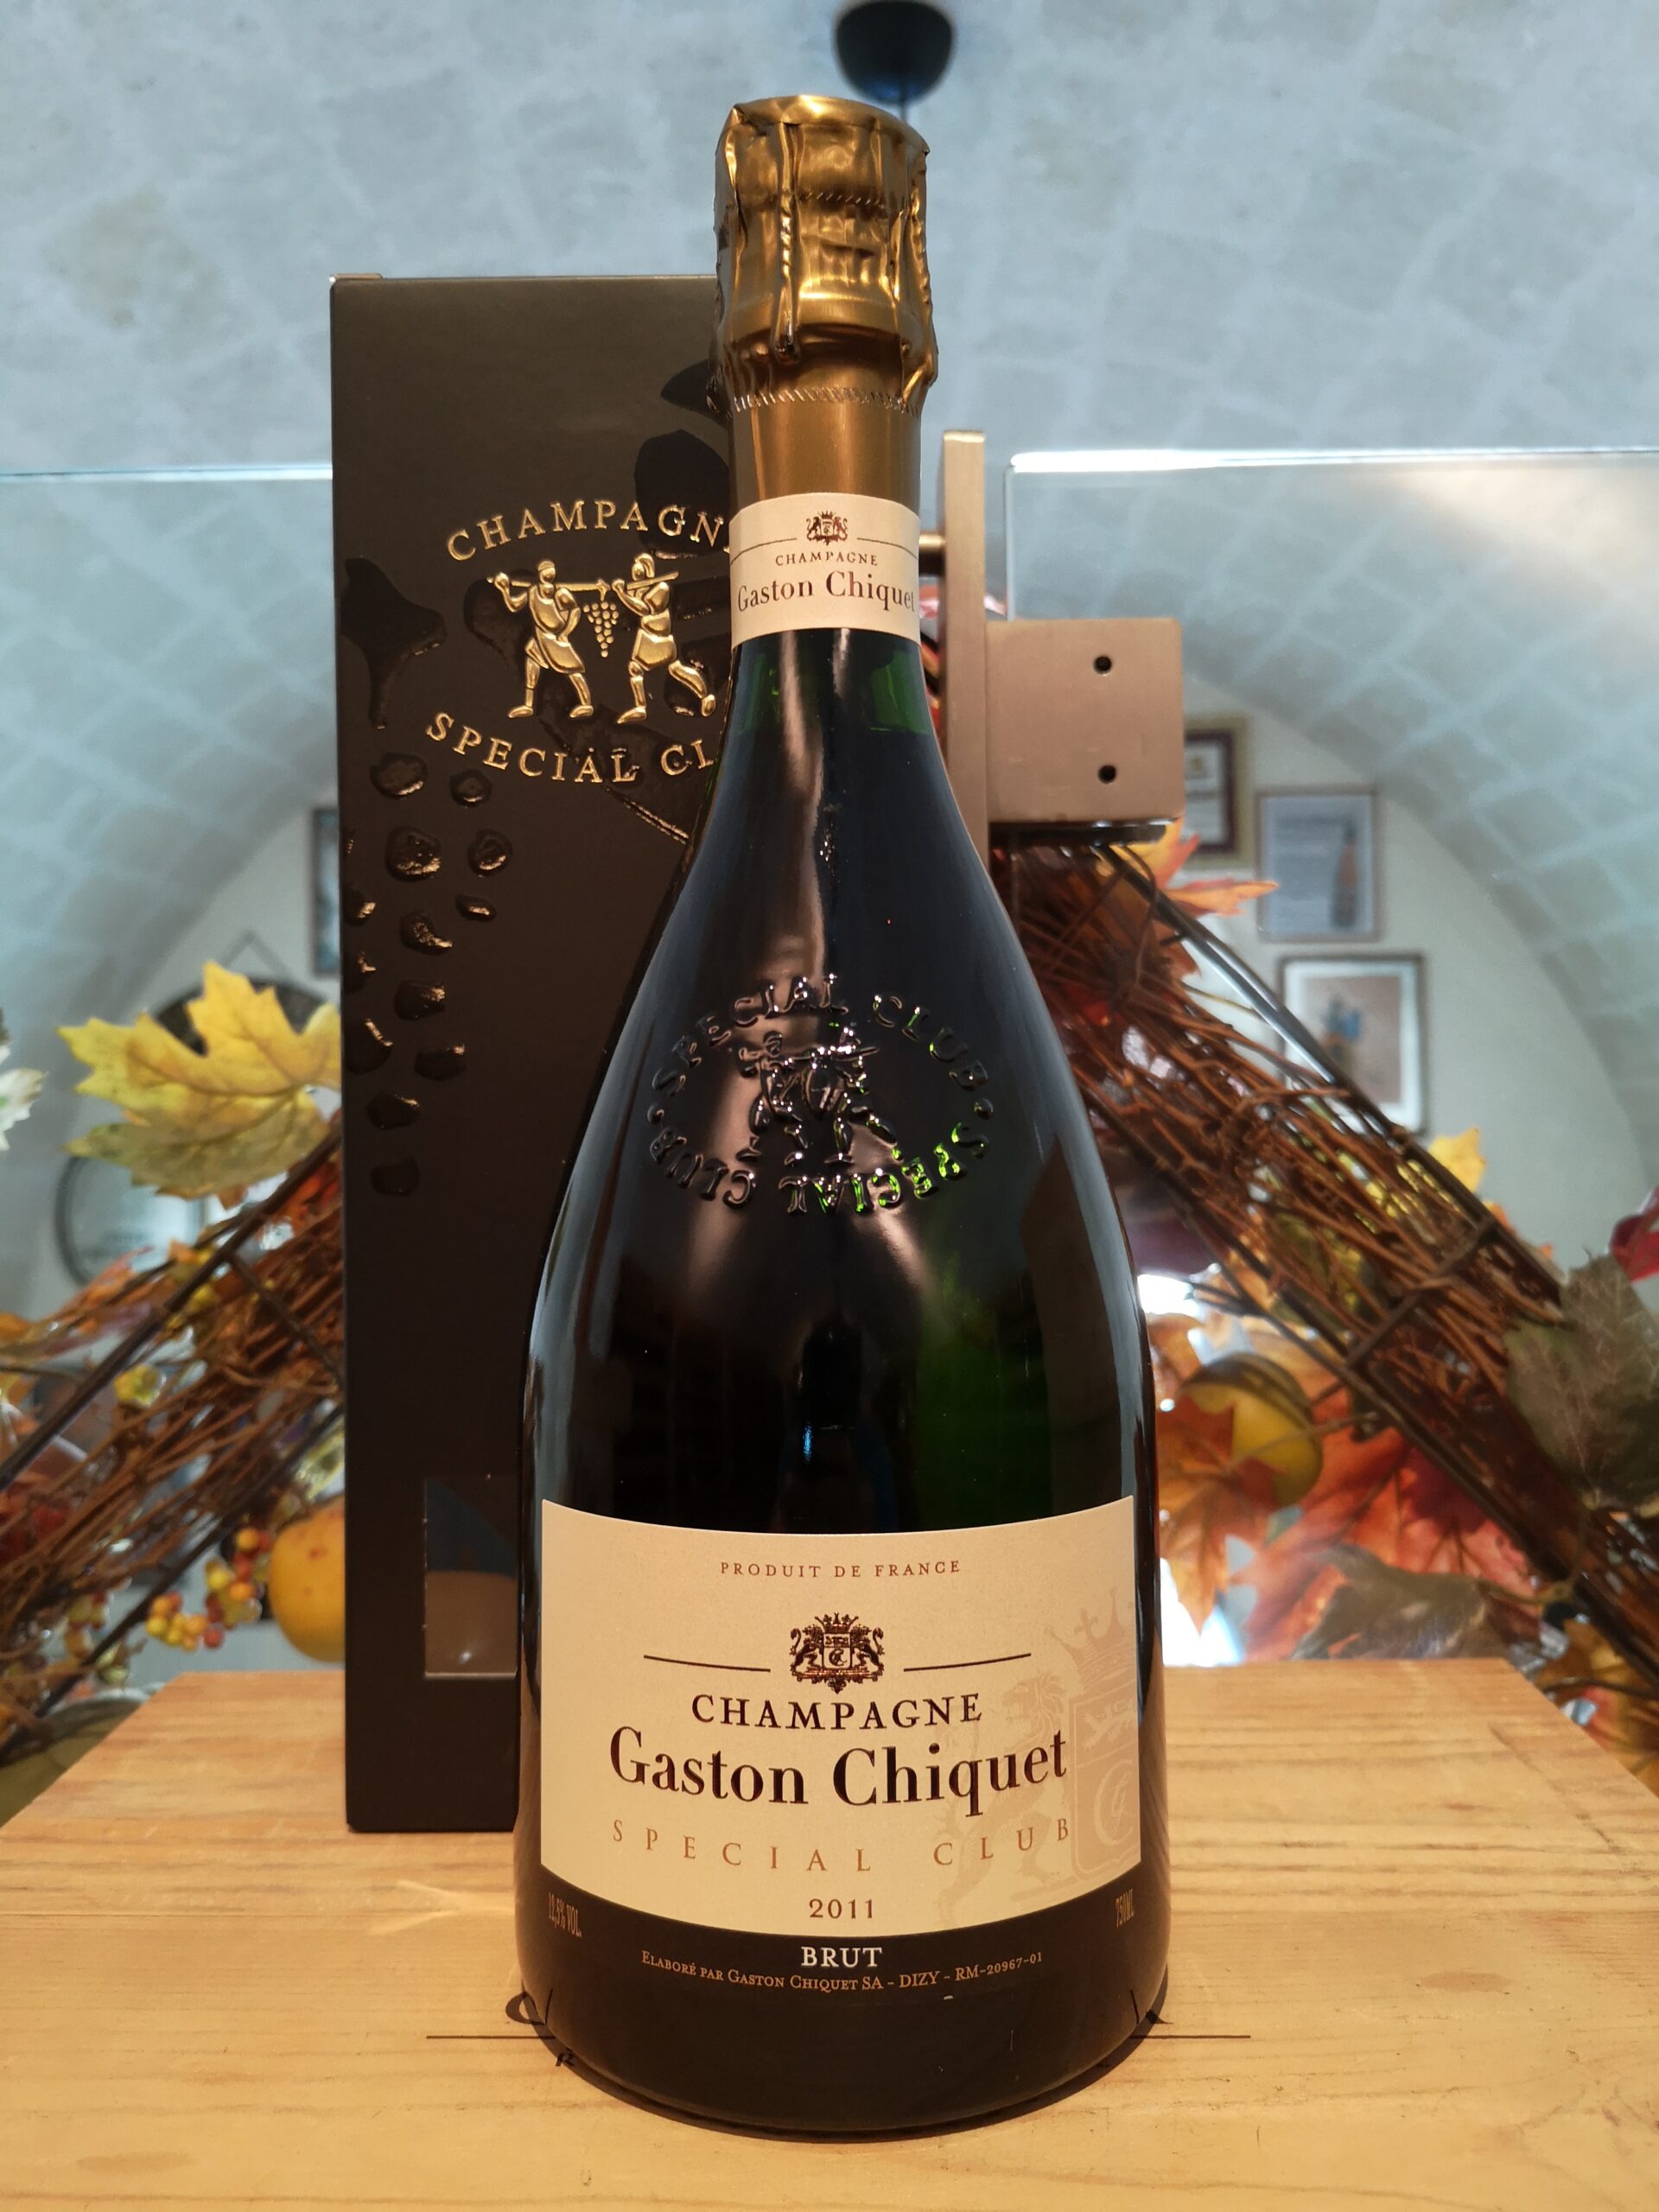 Gaston Chiquet Special Club Grand Cru Champagne Brut 2014